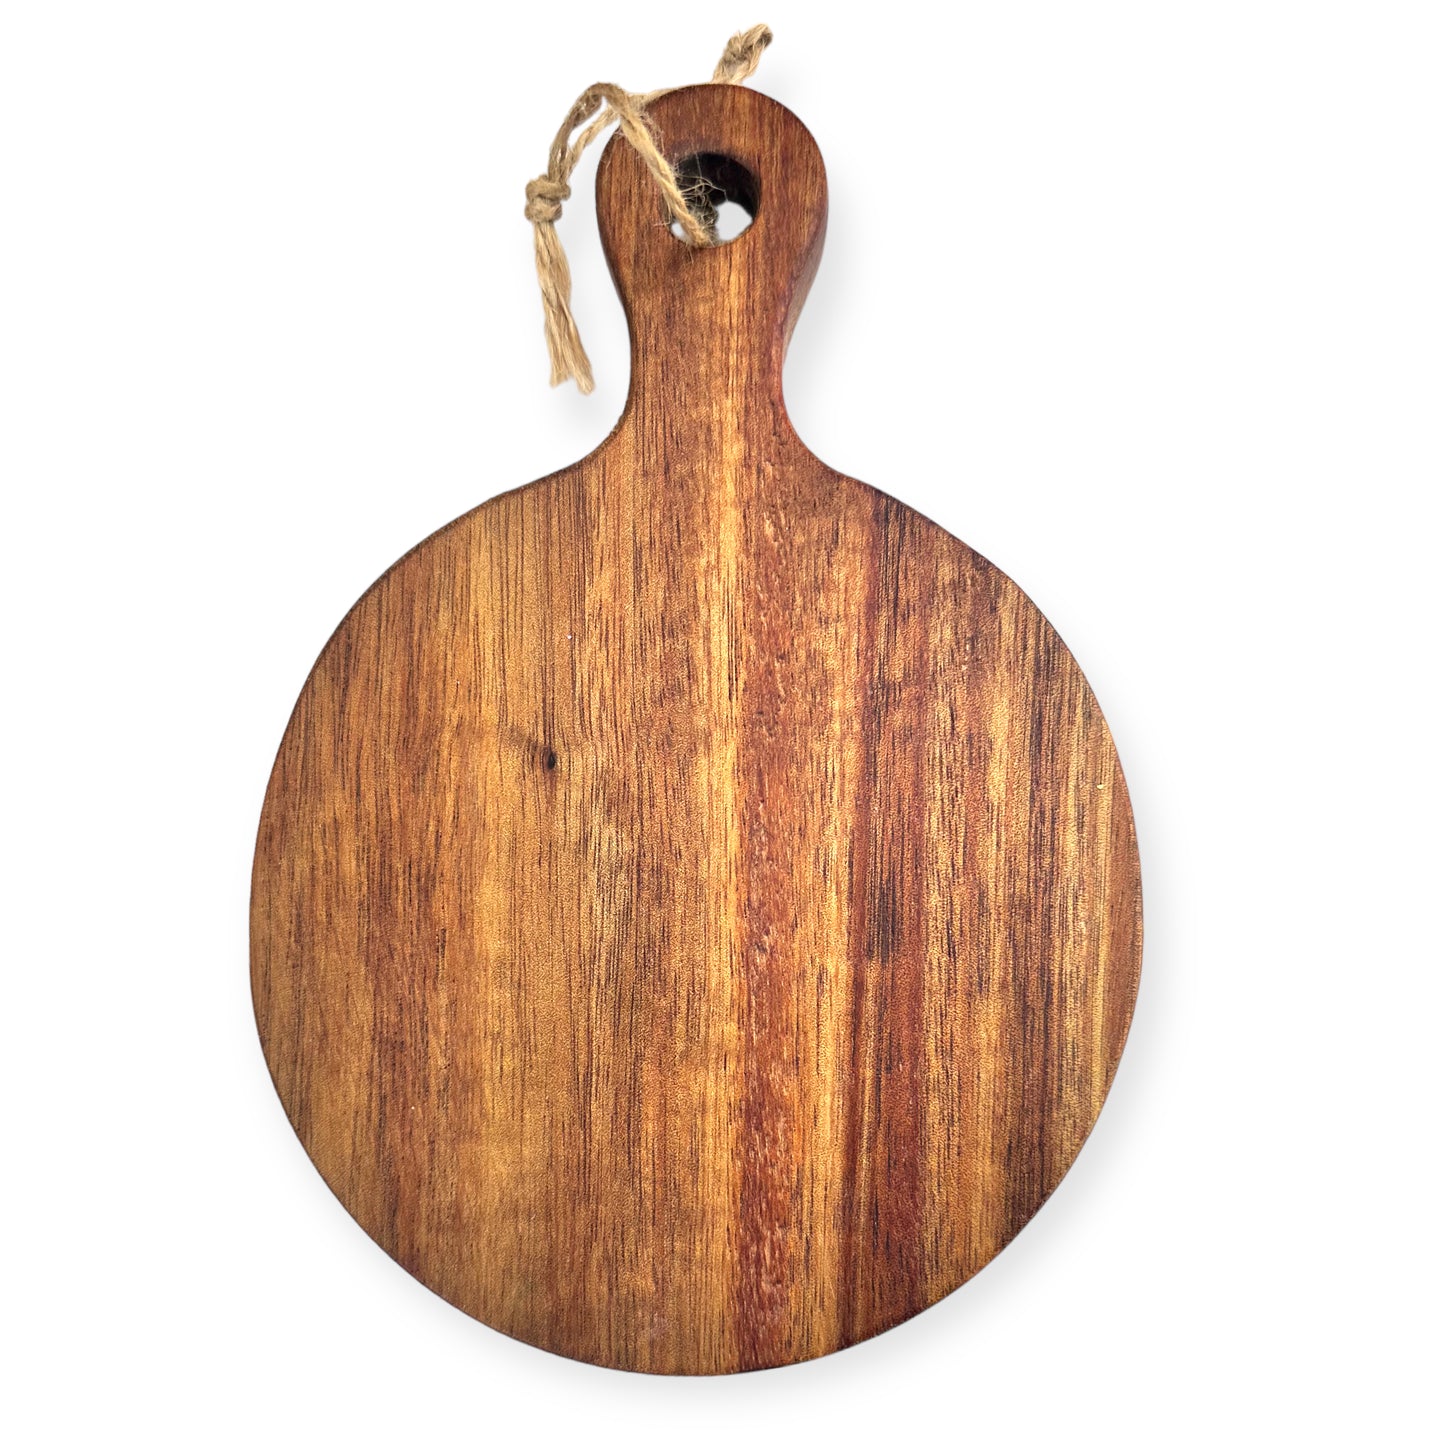 Custom Engraved Wood Boards - Create Lasting Memories